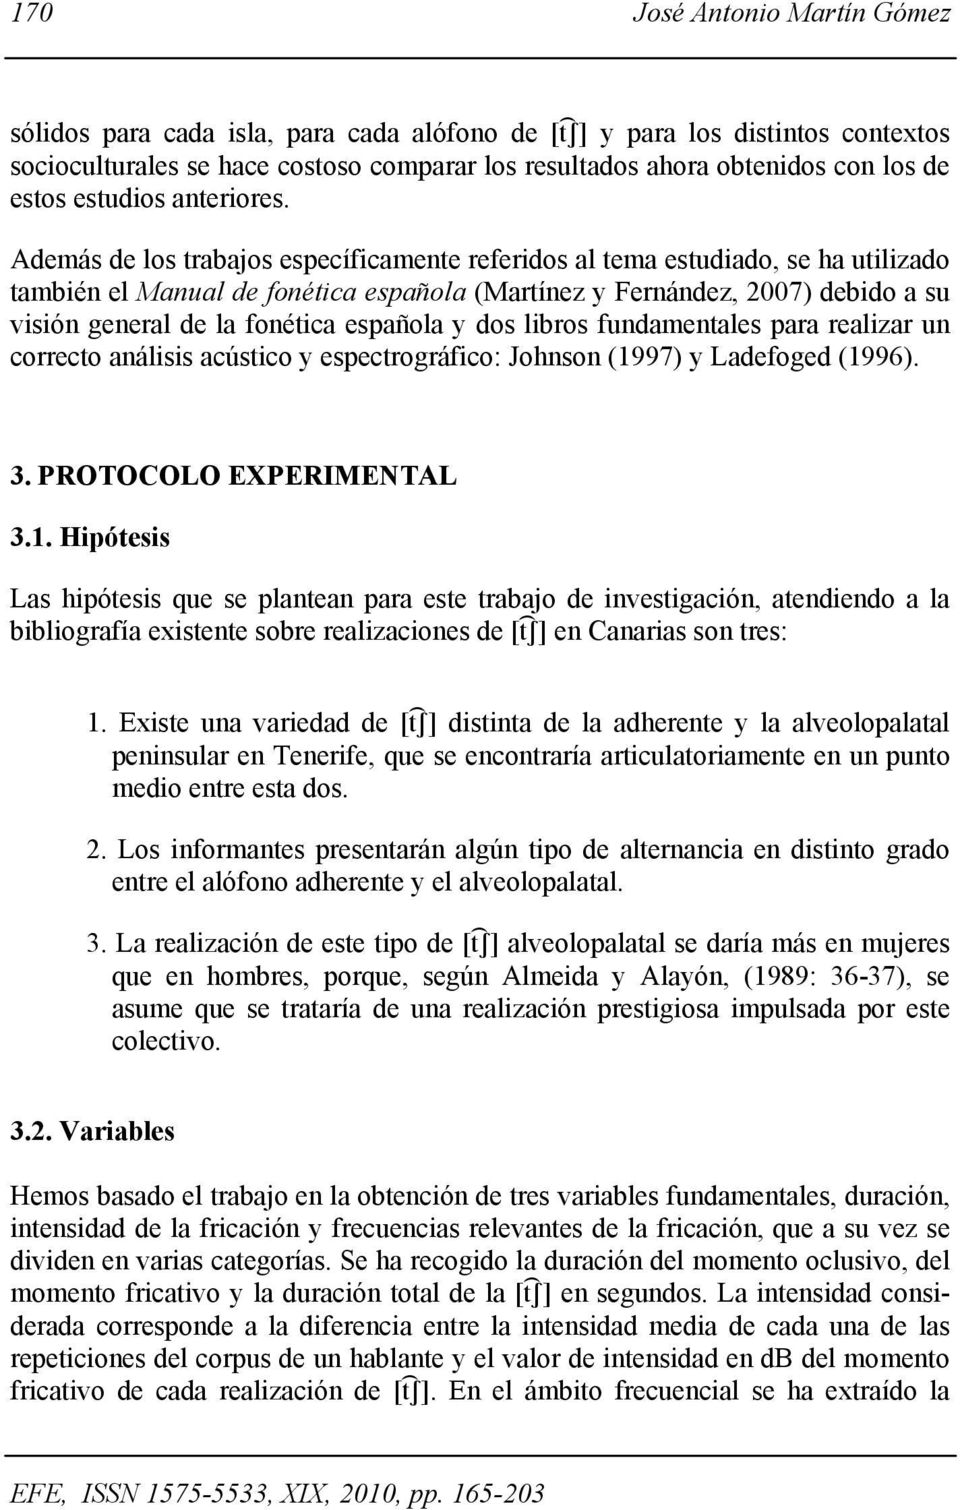 Además de los trabajos específicamente referidos al tema estudiado, se ha utilizado también el Manual de fonética española (Martínez y Fernández, 2007) debido a su visión general de la fonética